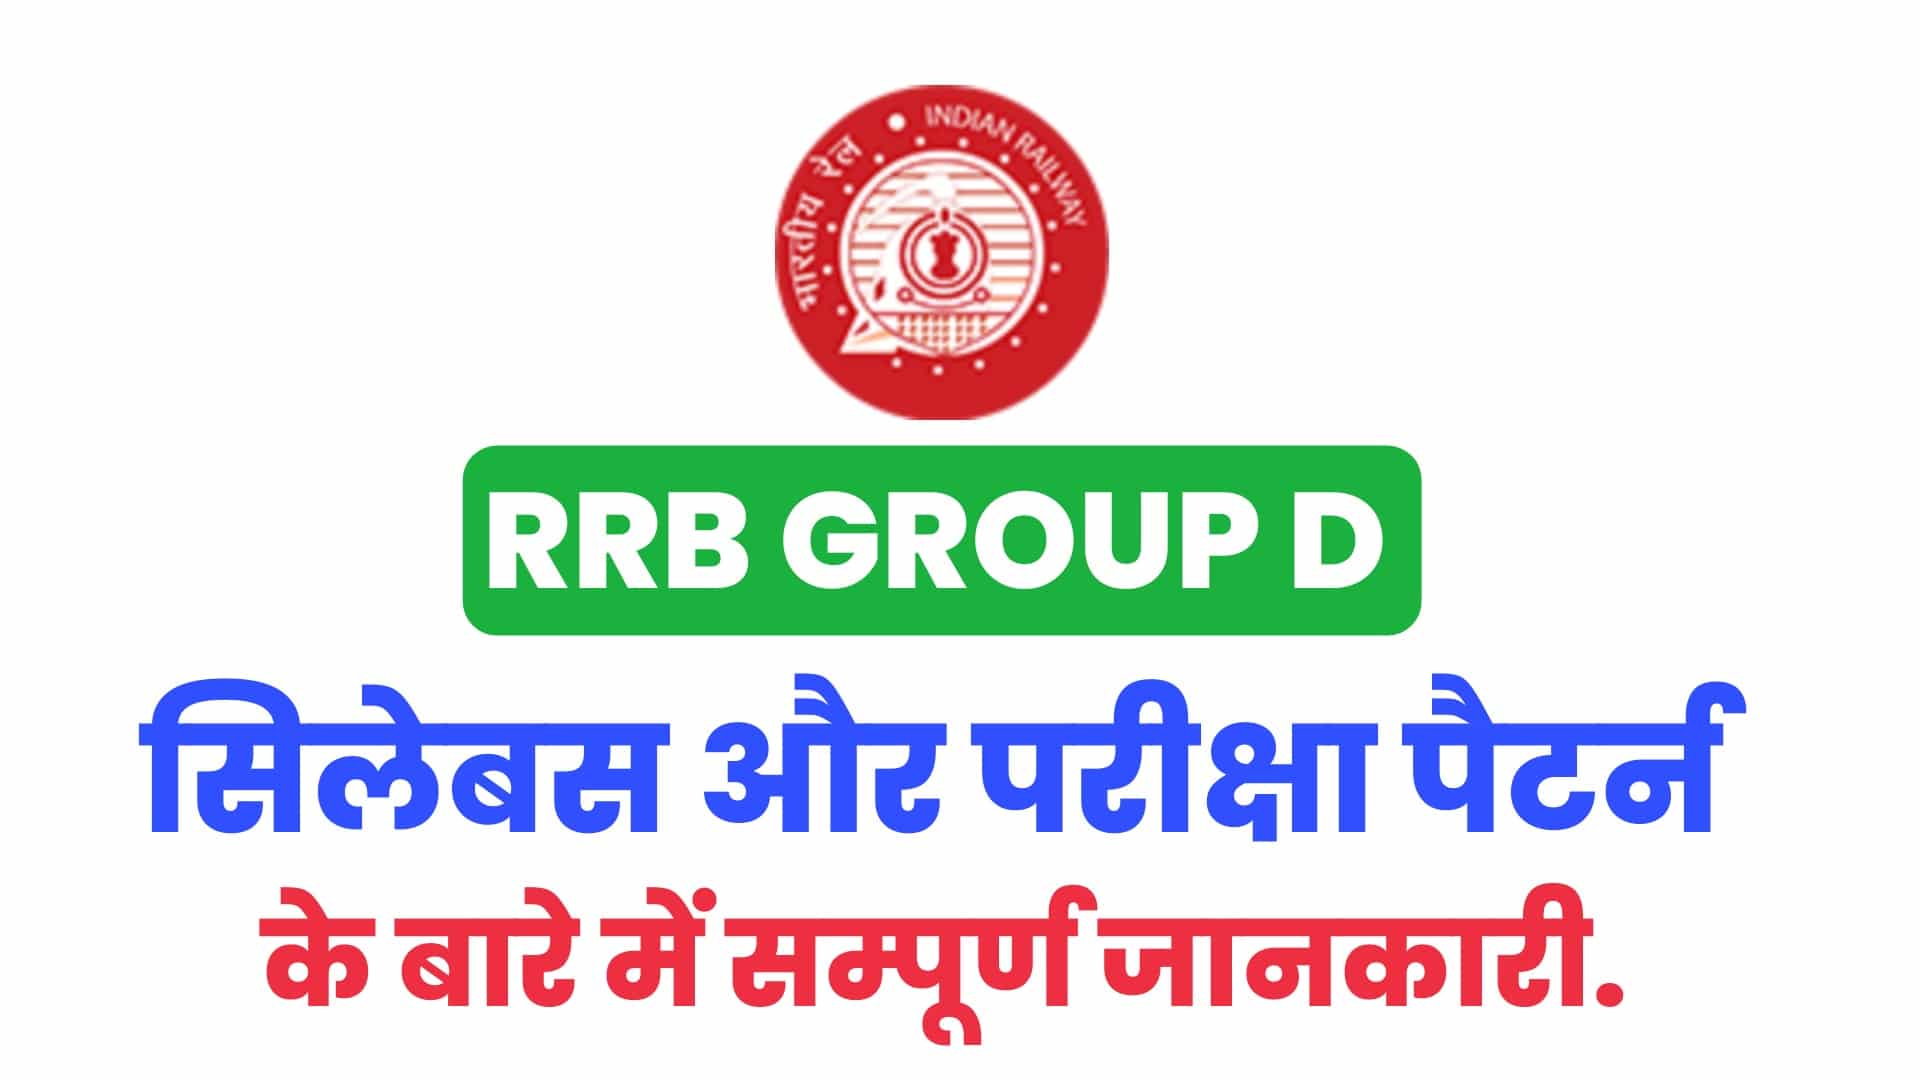 RRB Group D Syllabus 2022 In Hindi - आरआरबी ग्रुप डी पाठ्यक्रम और परीक्षा पैटर्न